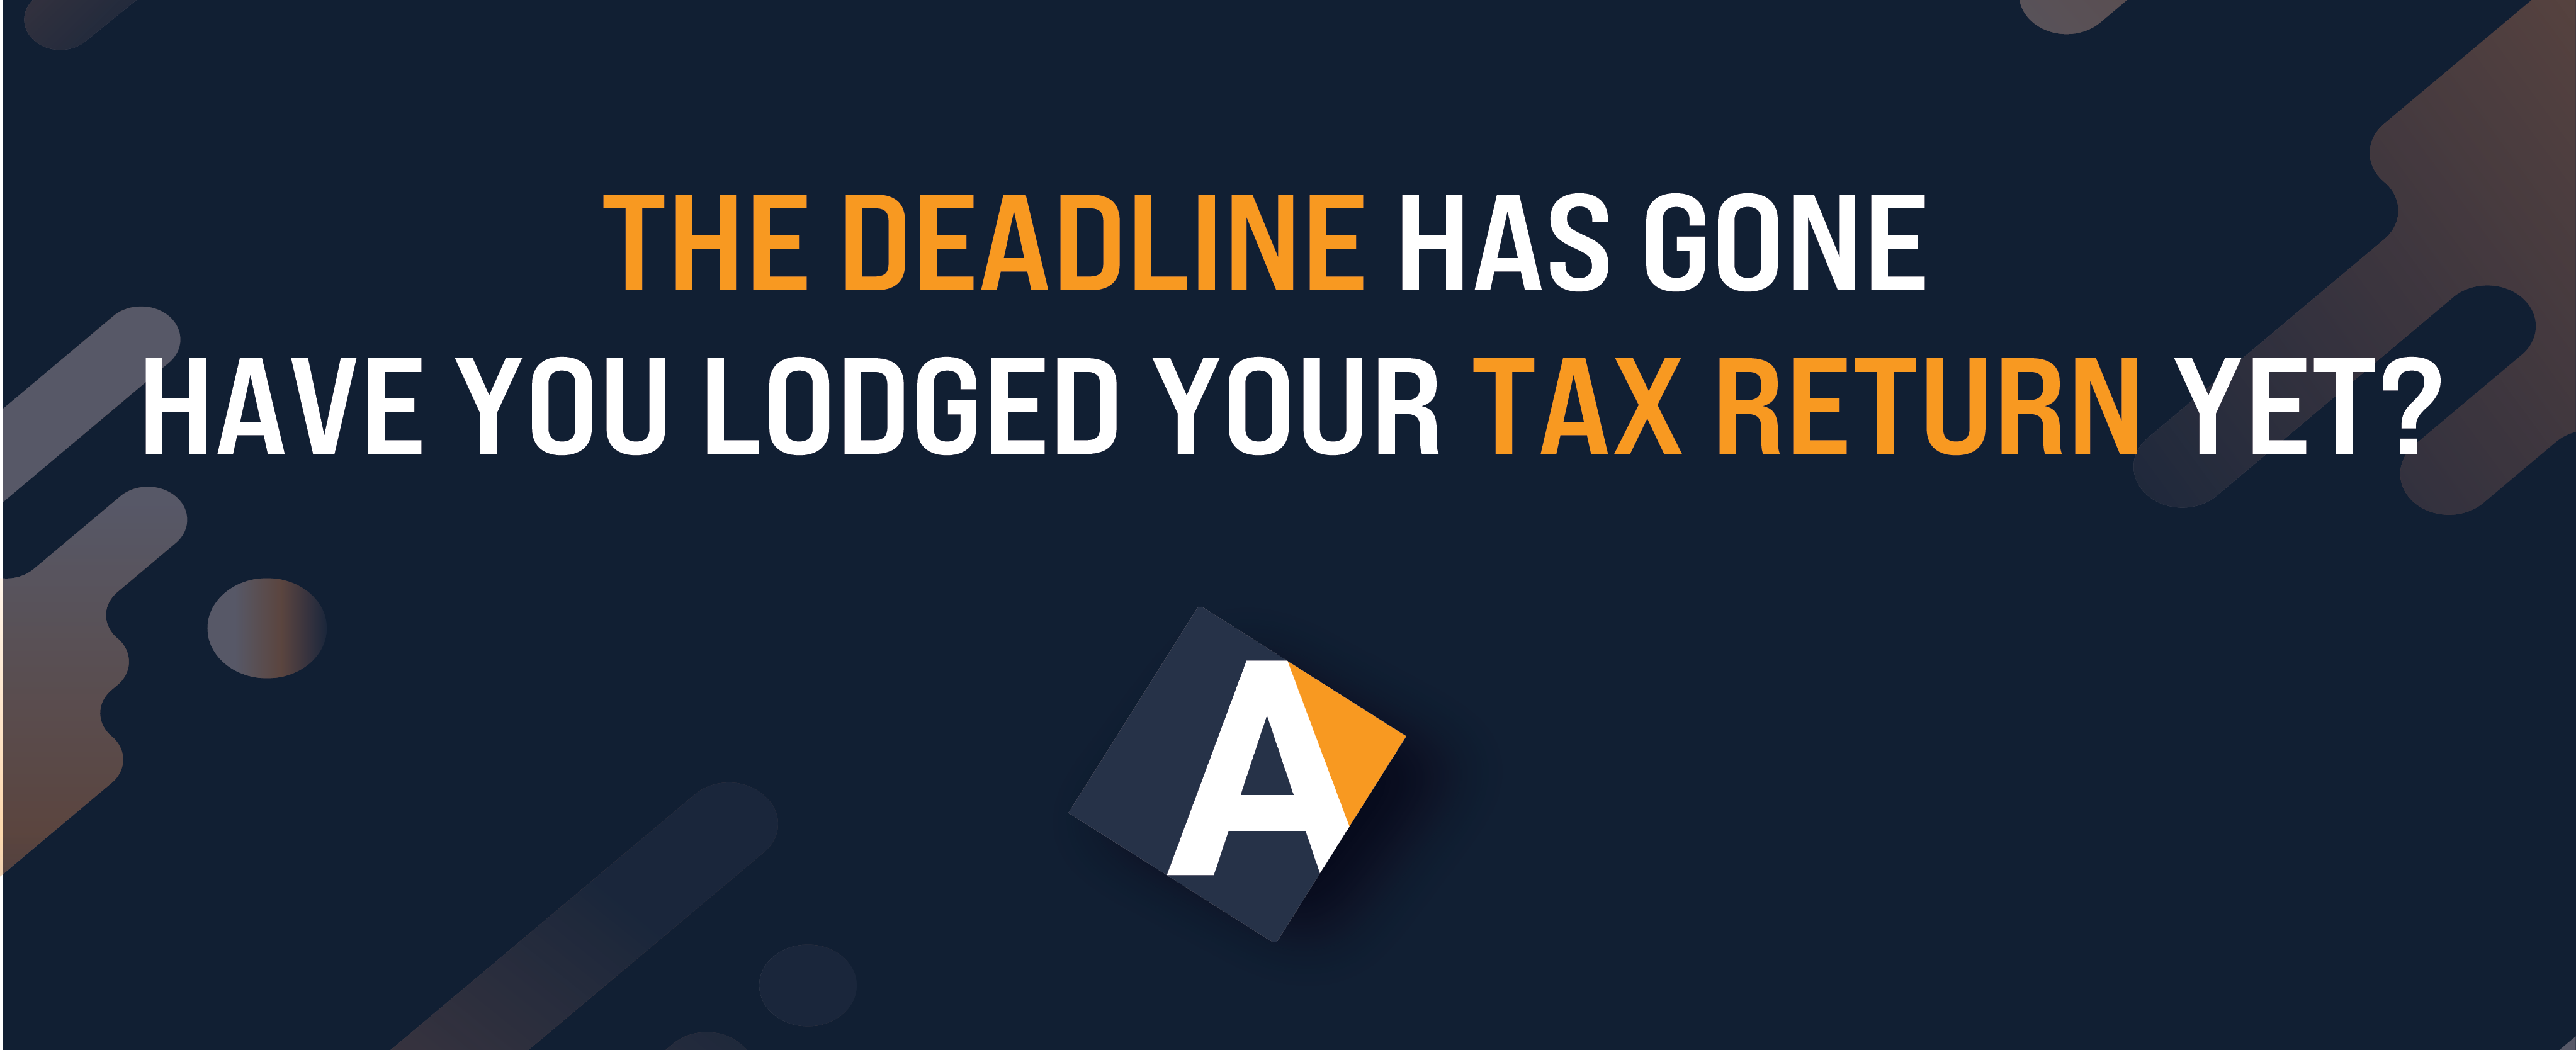 tax-return-deadline